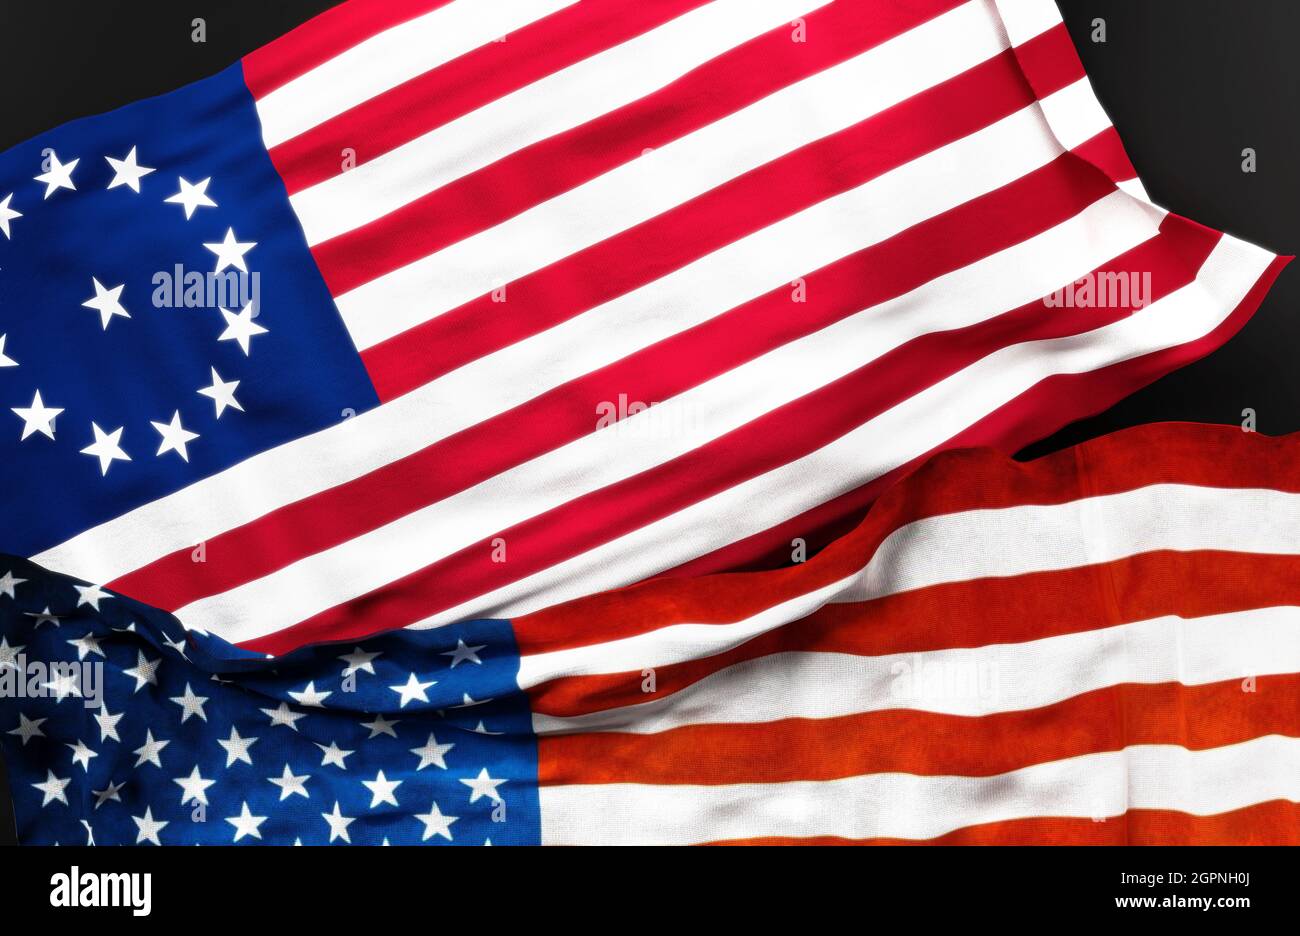 Flagge der Cowpens zusammen mit einer Flagge der Vereinigten Staaten von Amerika als Symbol der Einheit zwischen ihnen, 3d-Illustration Stockfoto